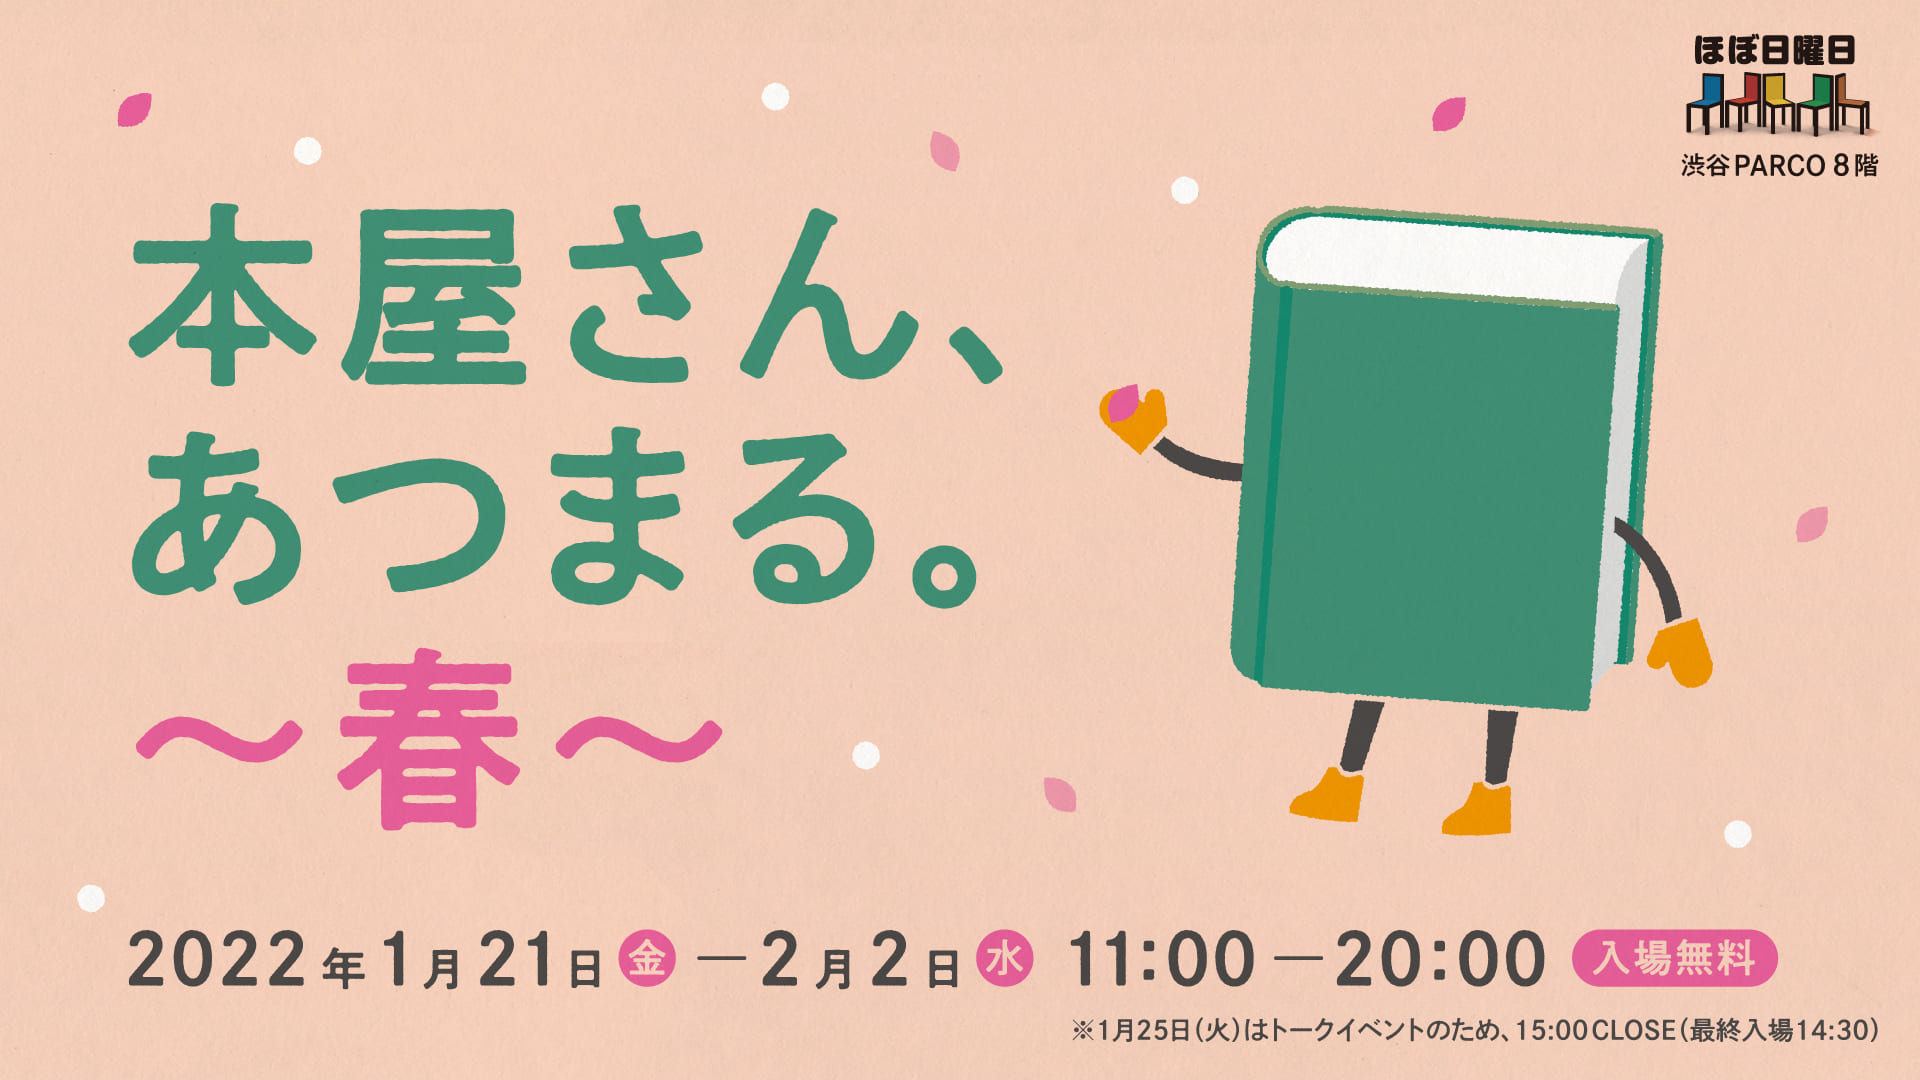 全国の本屋さんと本好きが選んだ本が大集合 本屋さんあつまる 春 渋谷parcoで開催 ほぼ日のプレスリリース